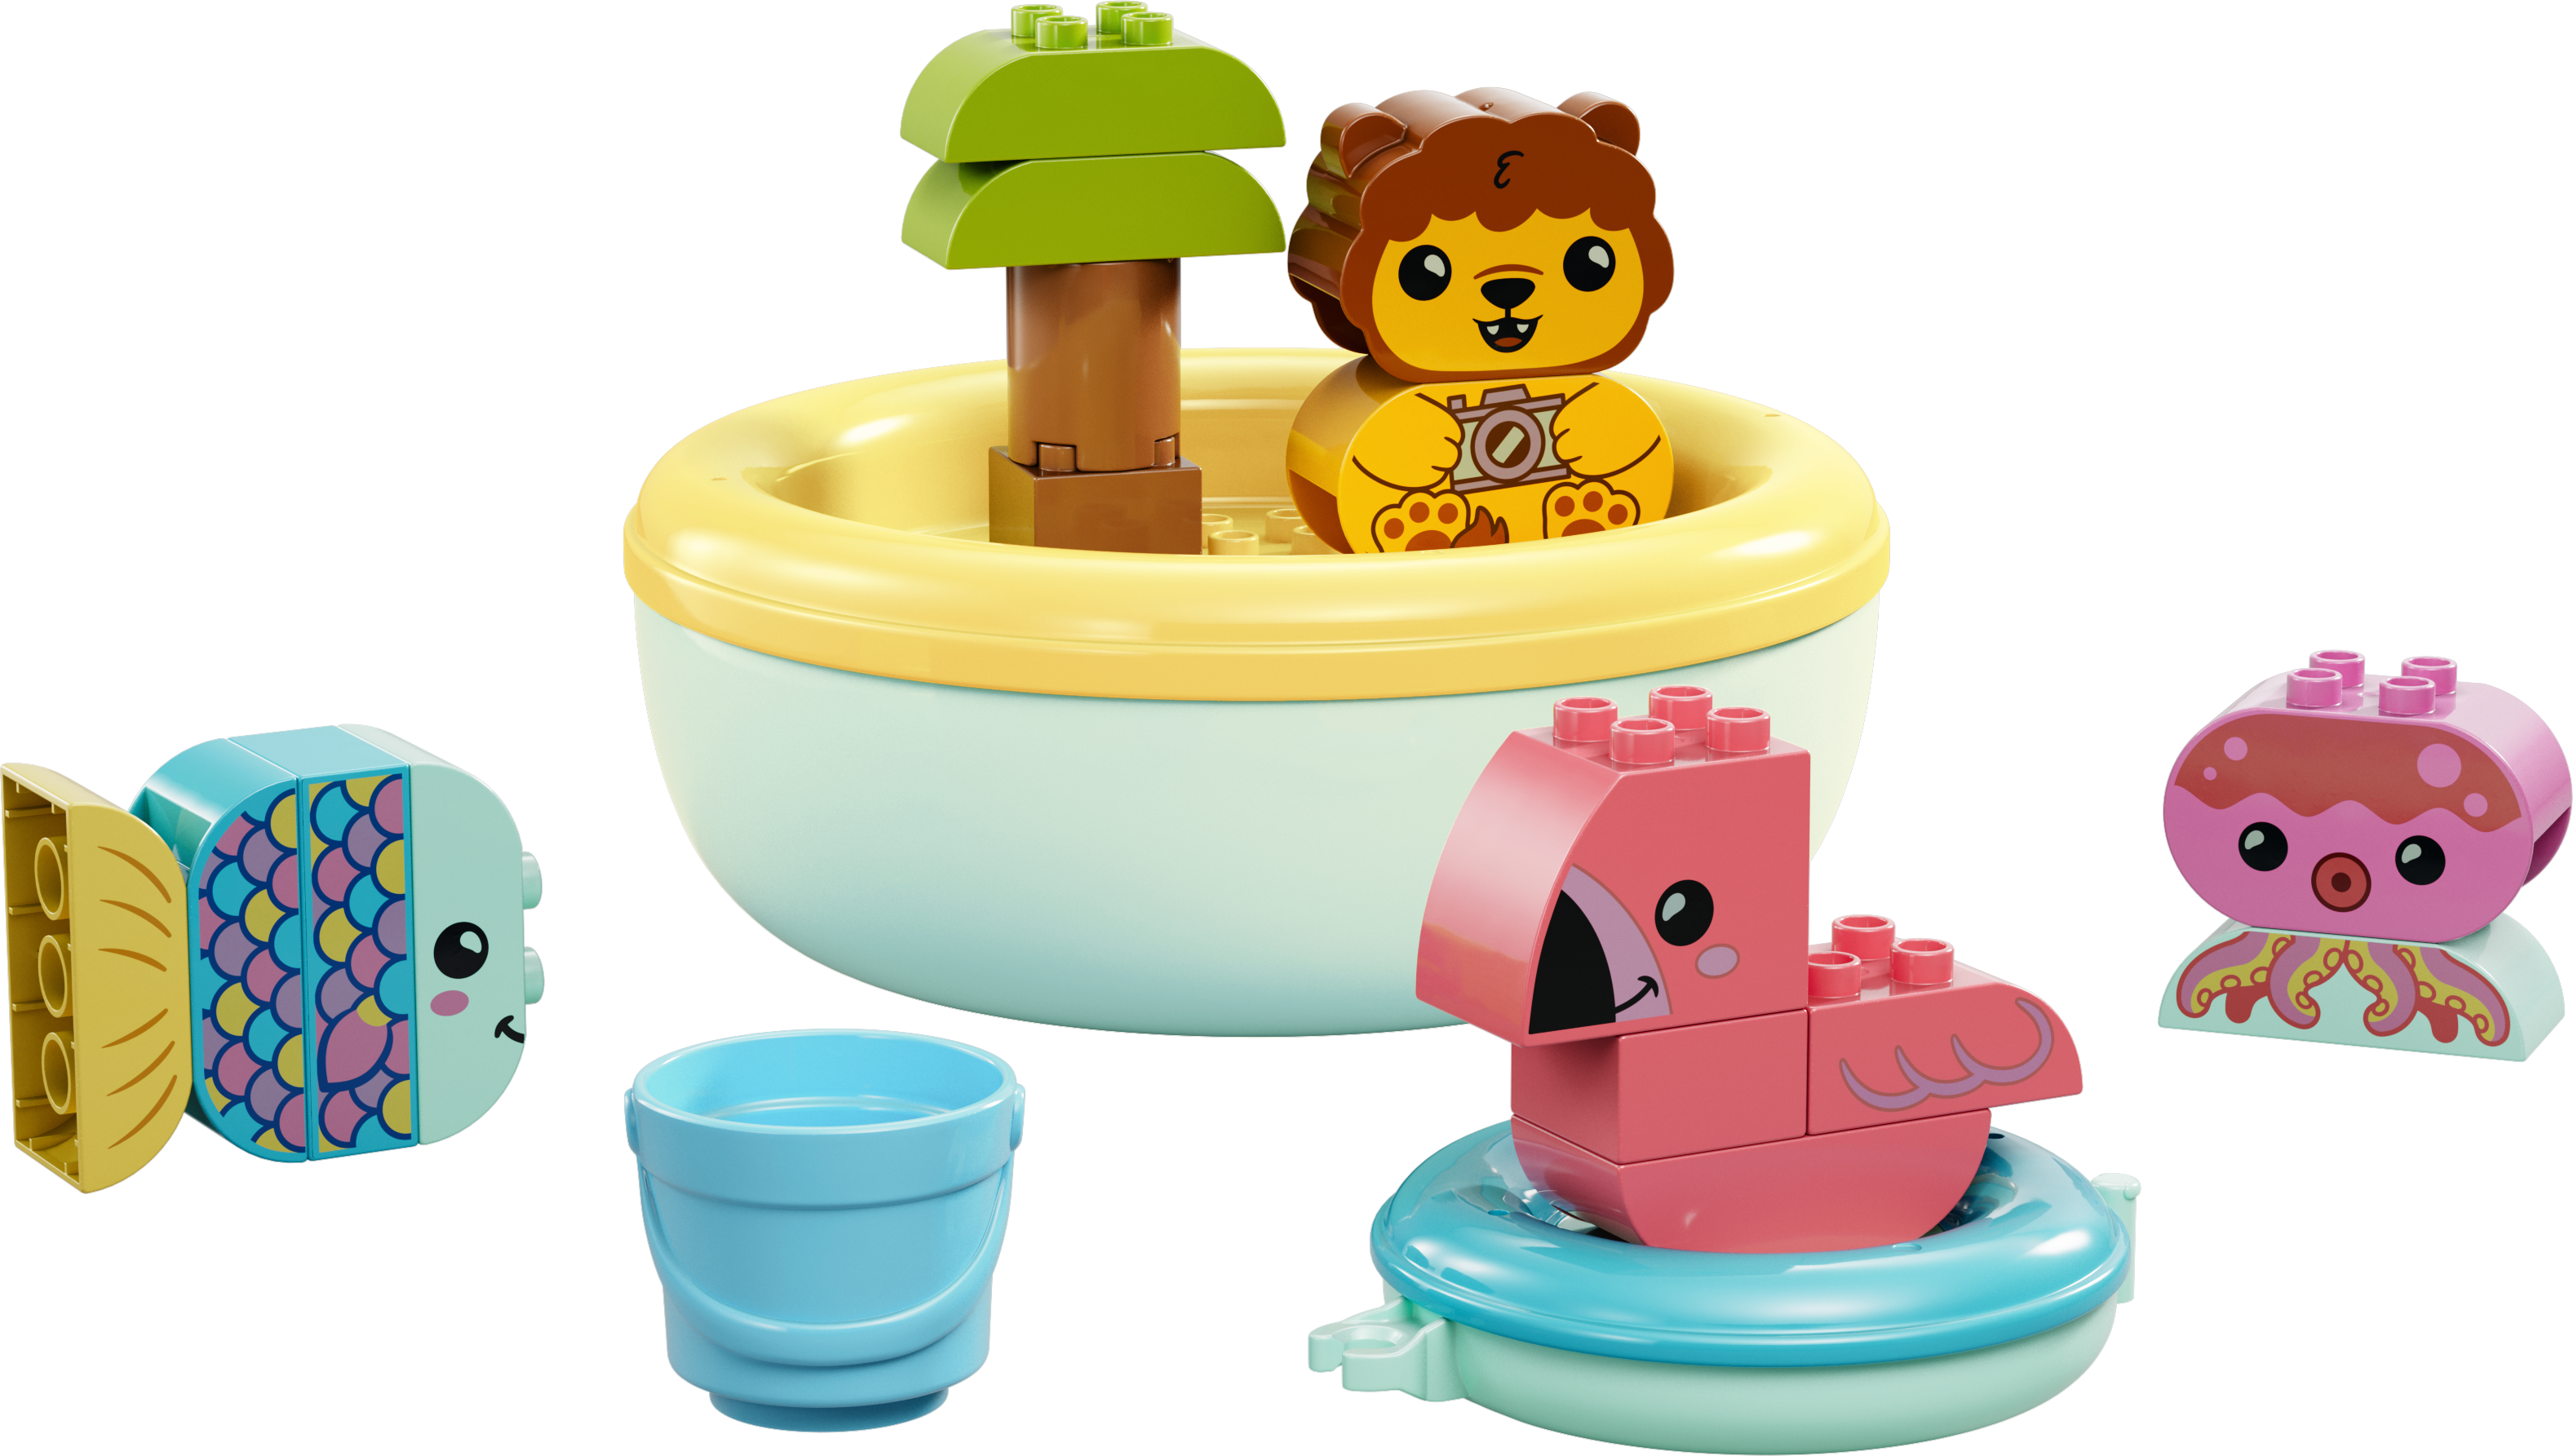 Lego 10966 Bath Time Fun Floating Animal Island